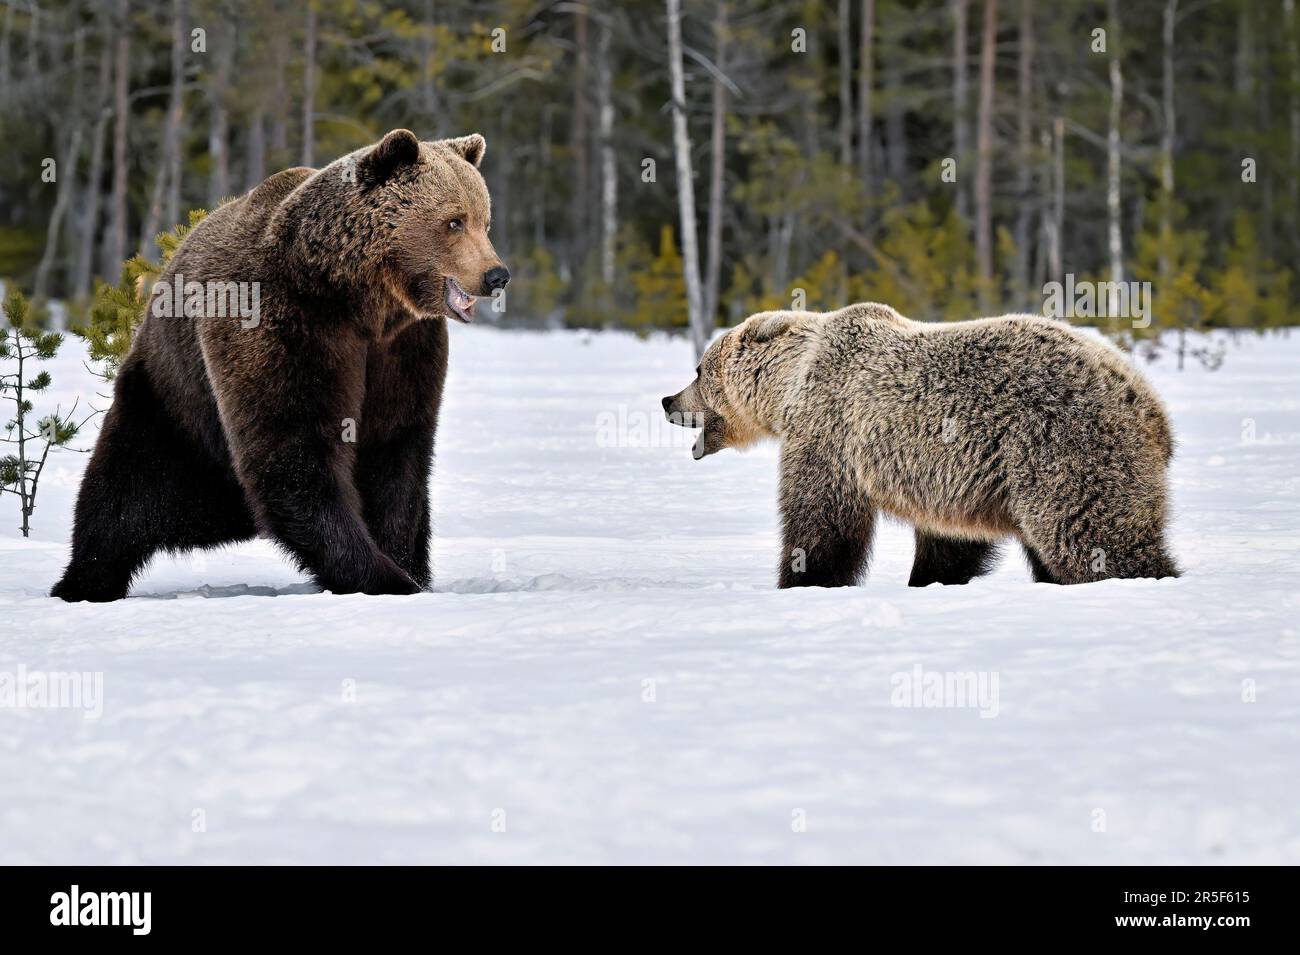 La maman ours défend ses petits contre un ours mâle Banque D'Images